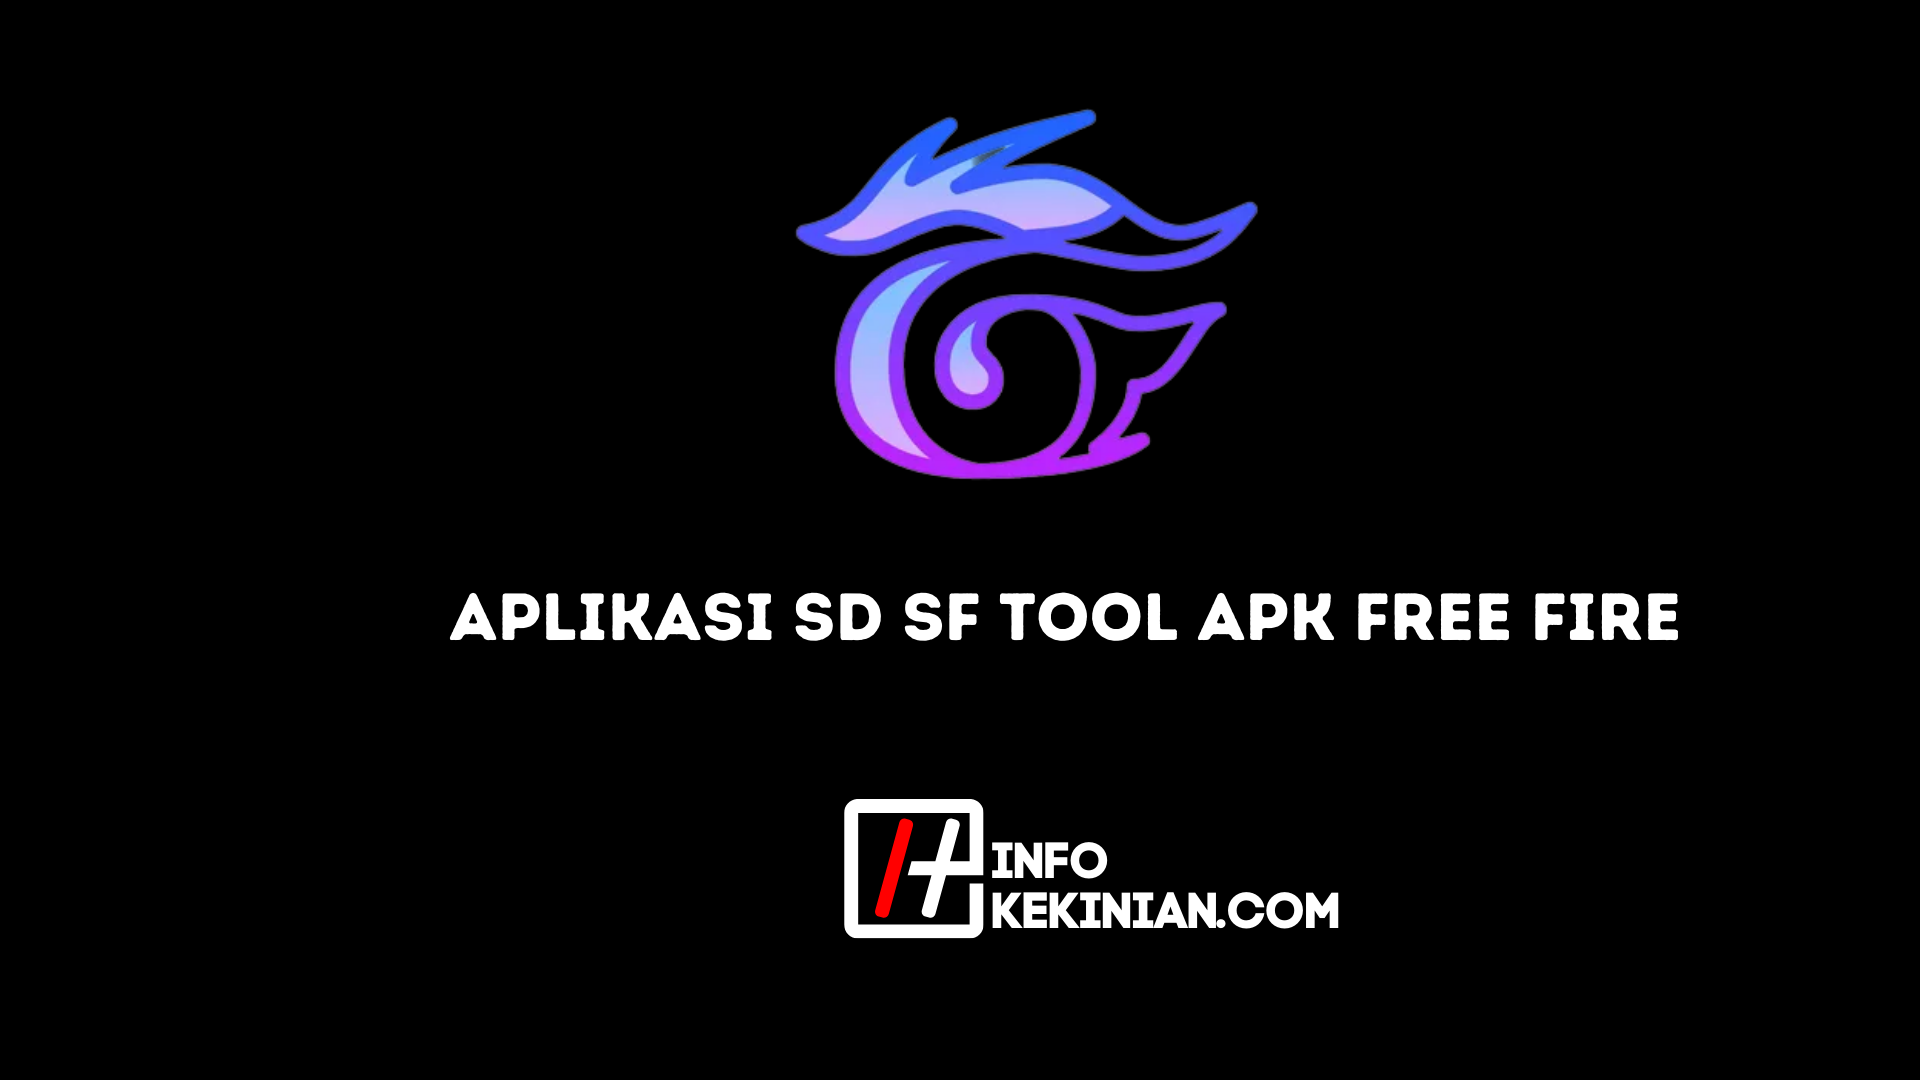 Aplikasi SD SF Tool Apk Free Fire